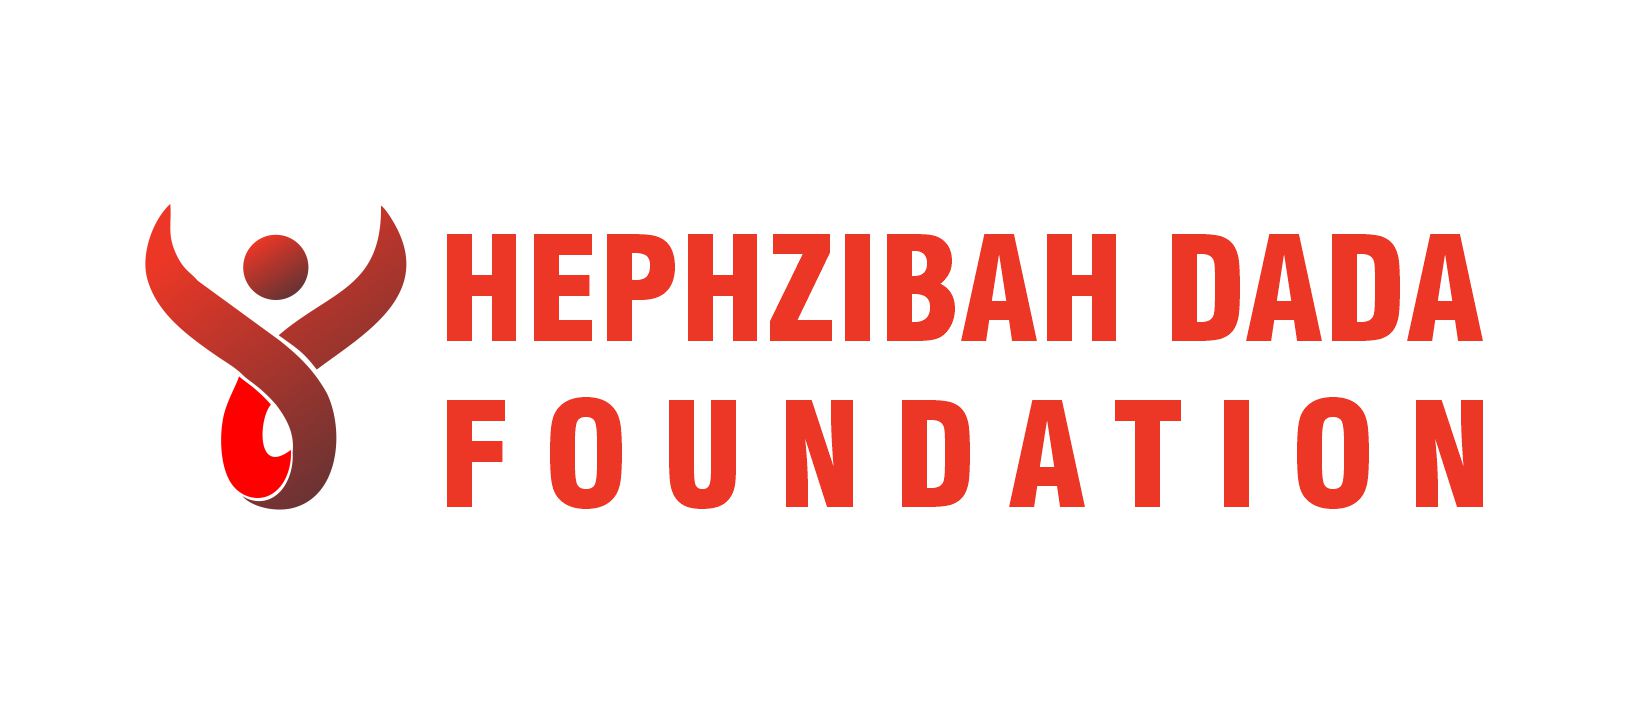 Hephzibah Dada Org